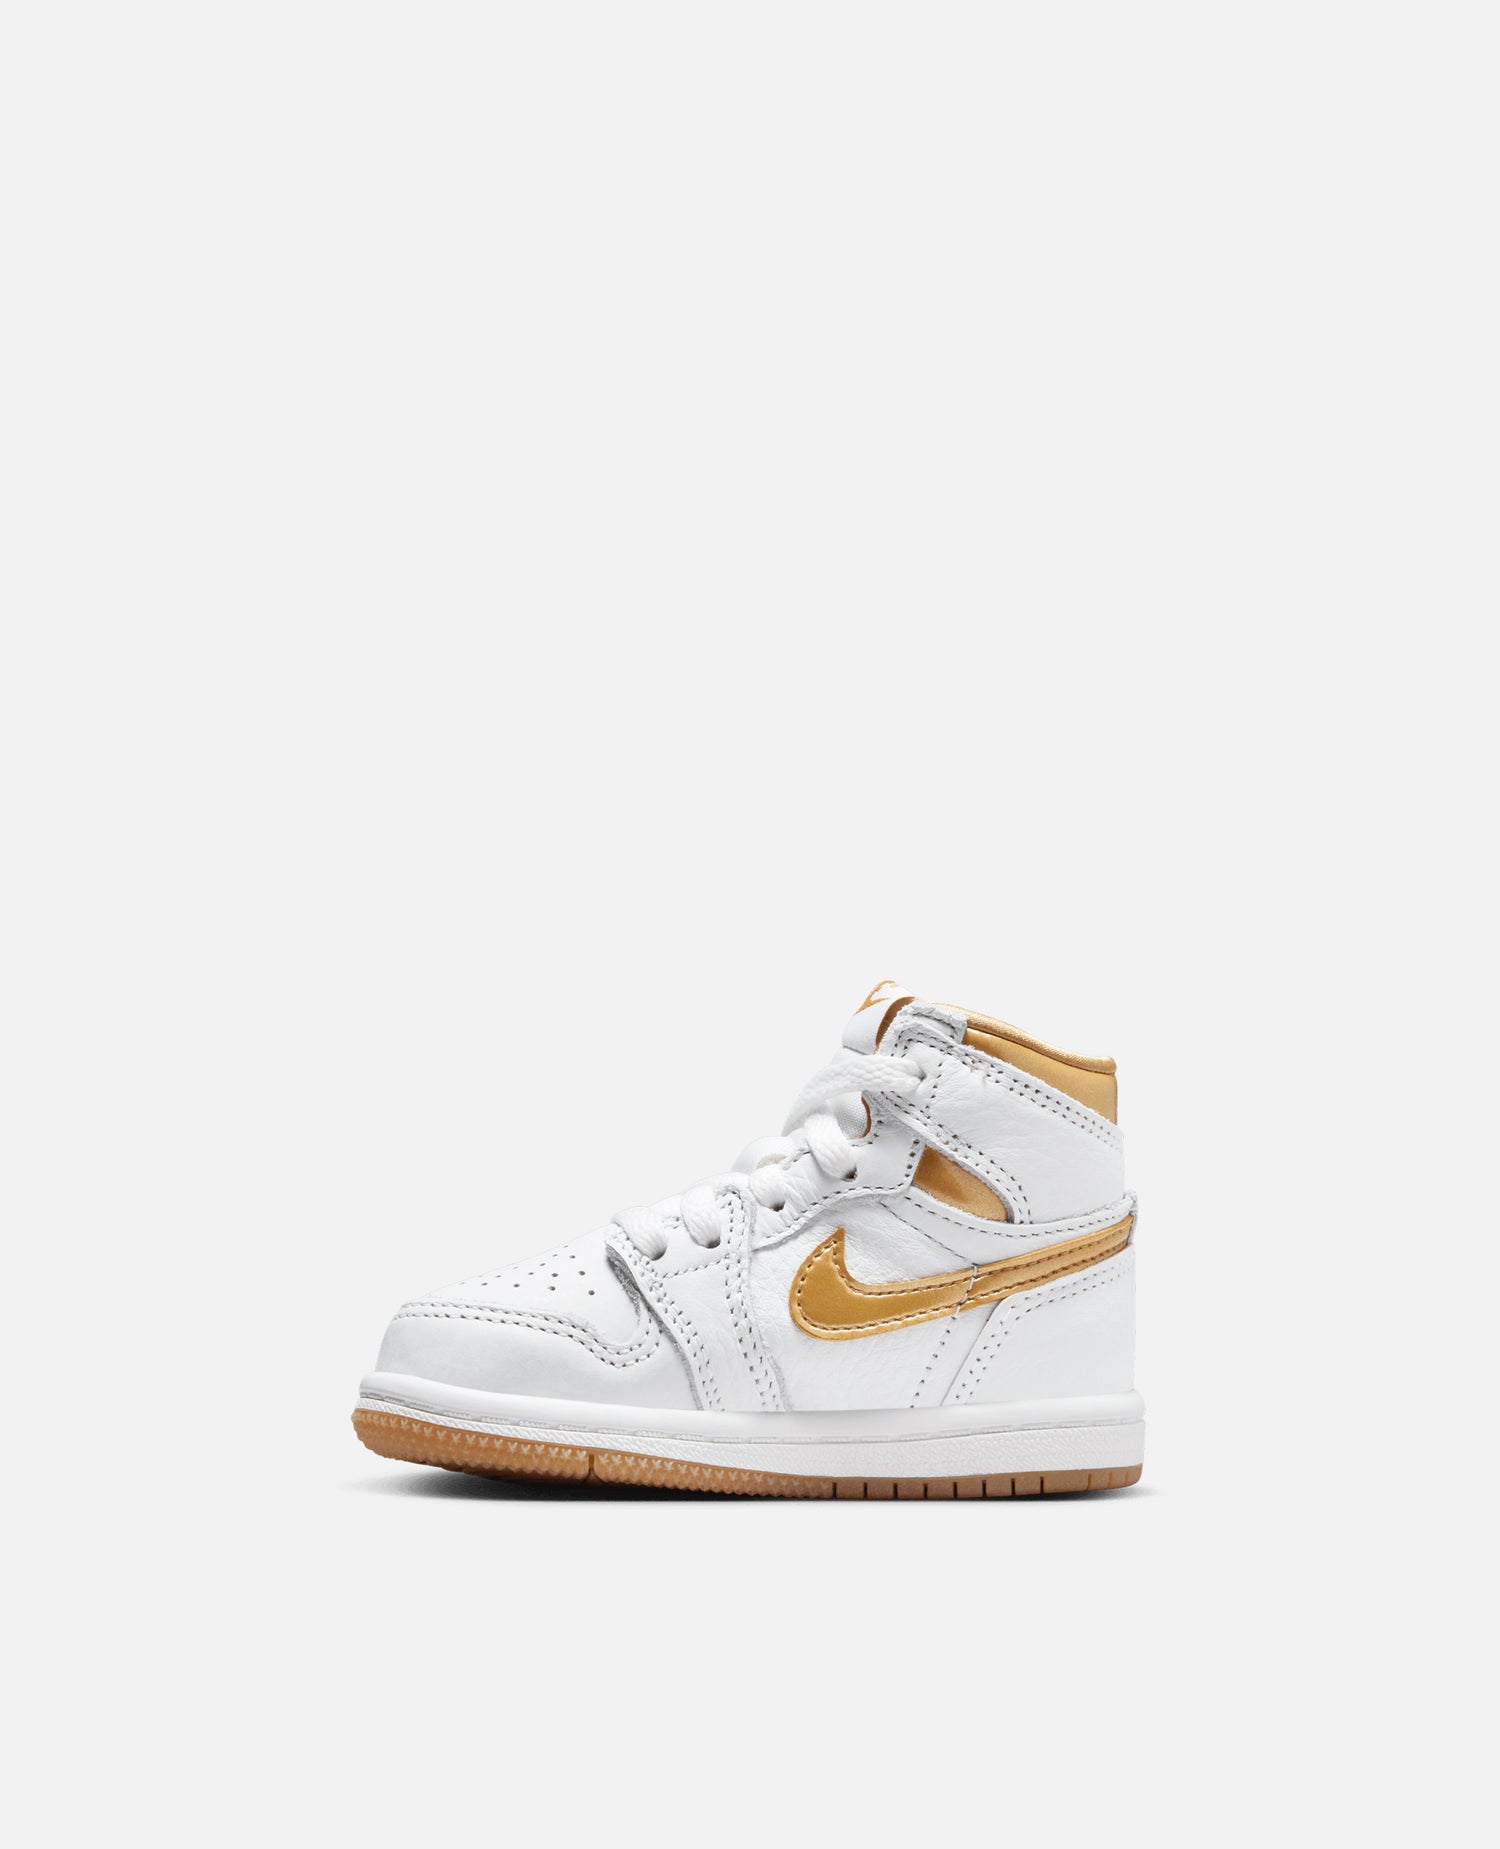 Nike Jordan 1 Retro High OG (TD) (White/Metallic Gold-Gum Light Brown)